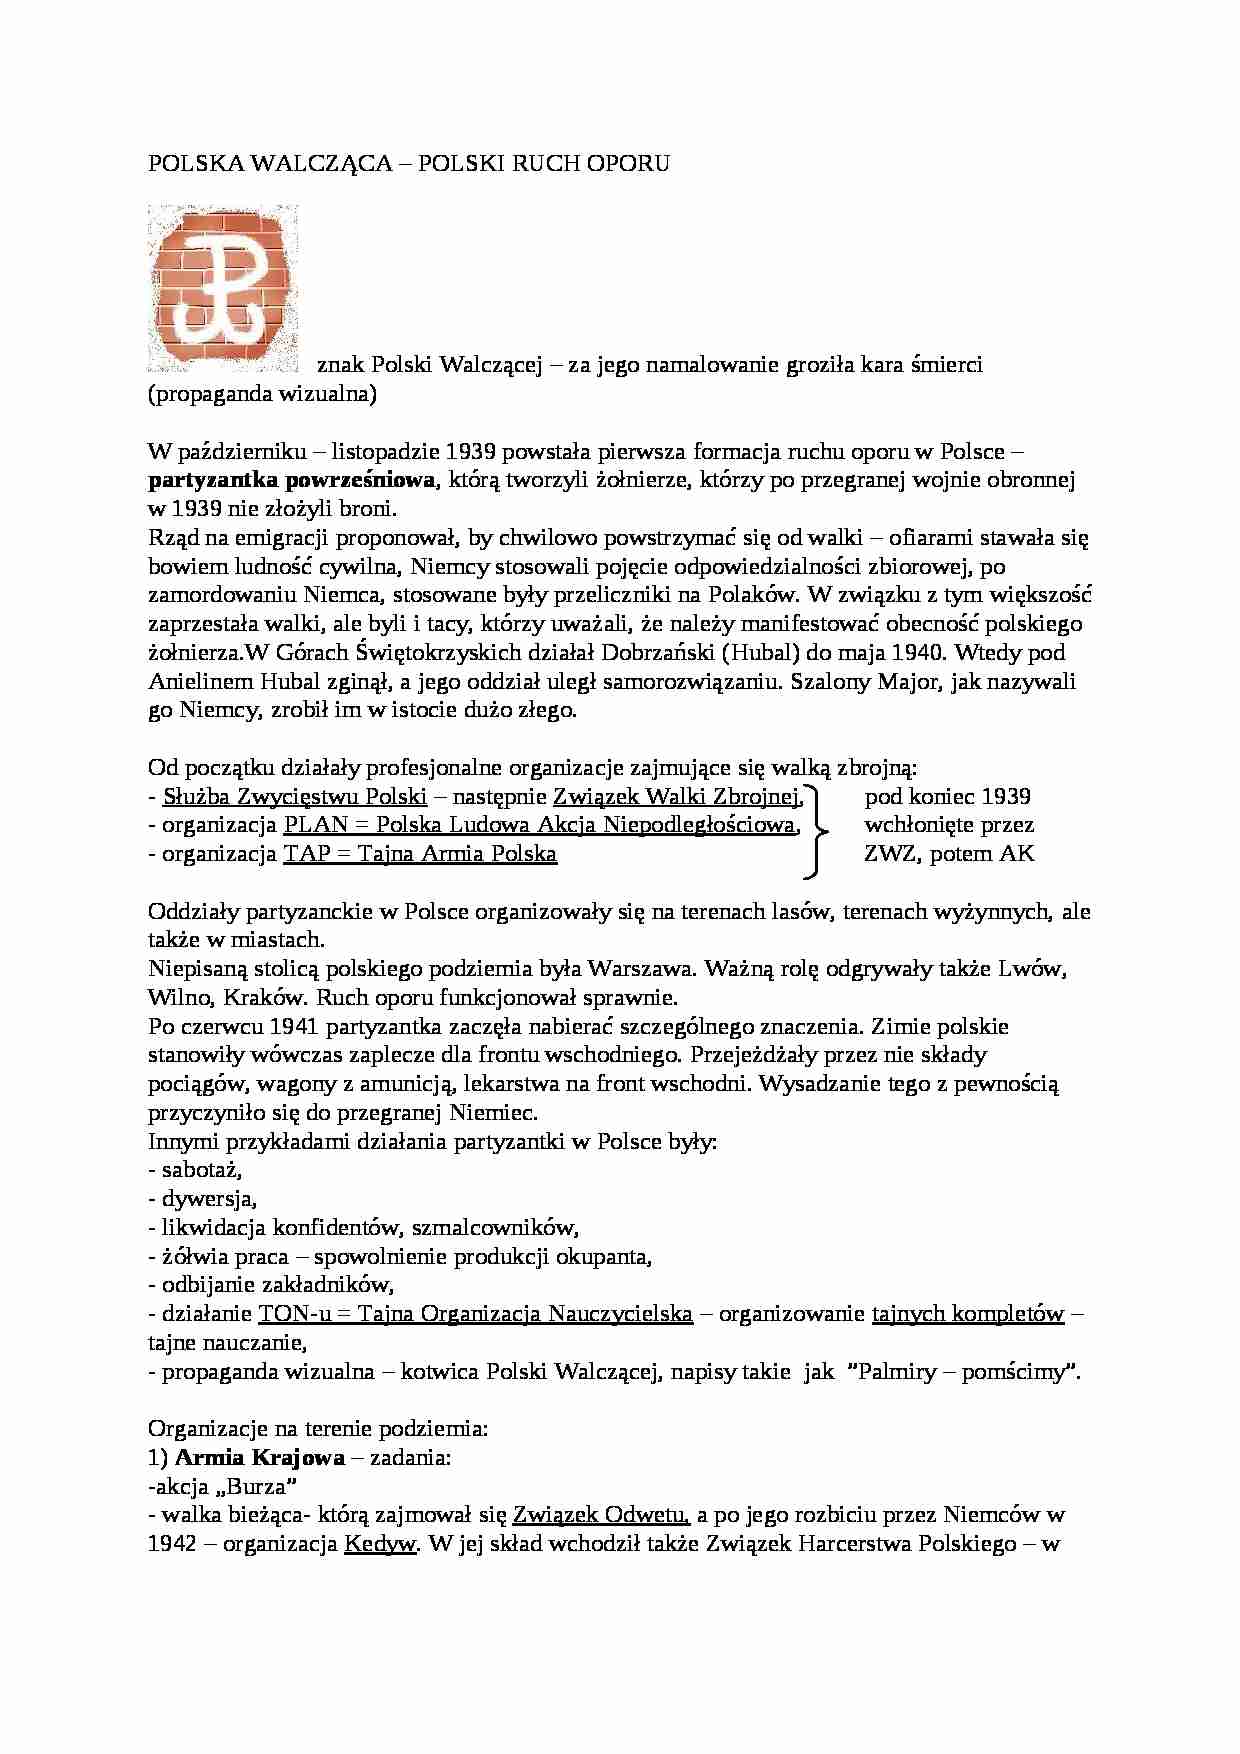 Polska Walcząca - polski ruch oporu  - strona 1